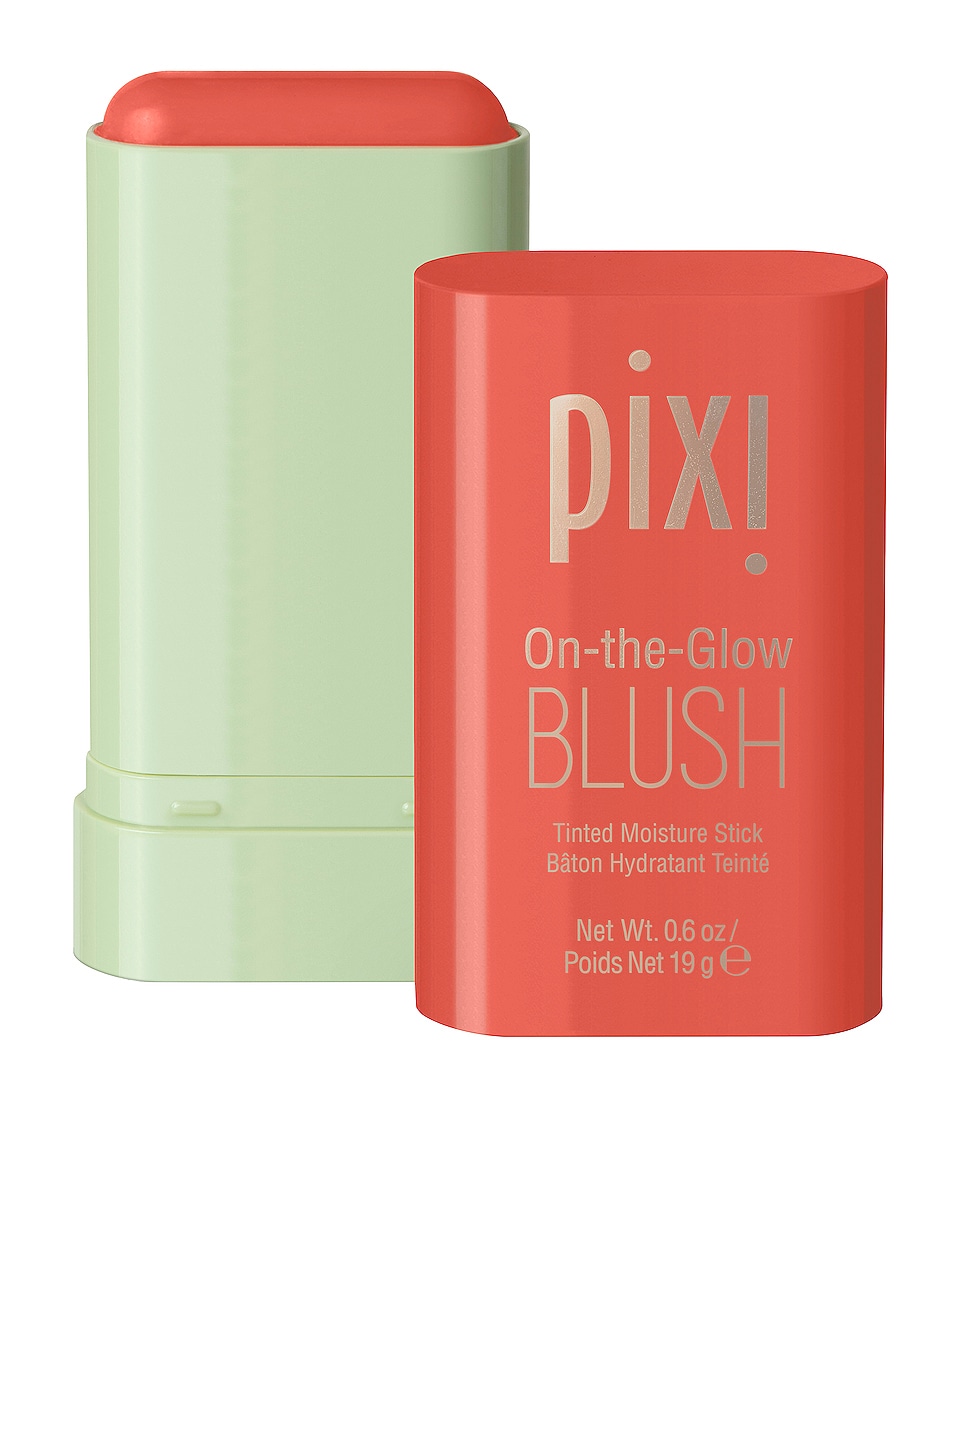 Румяна Pixi On-The-Glow Blush, цвет Juicy